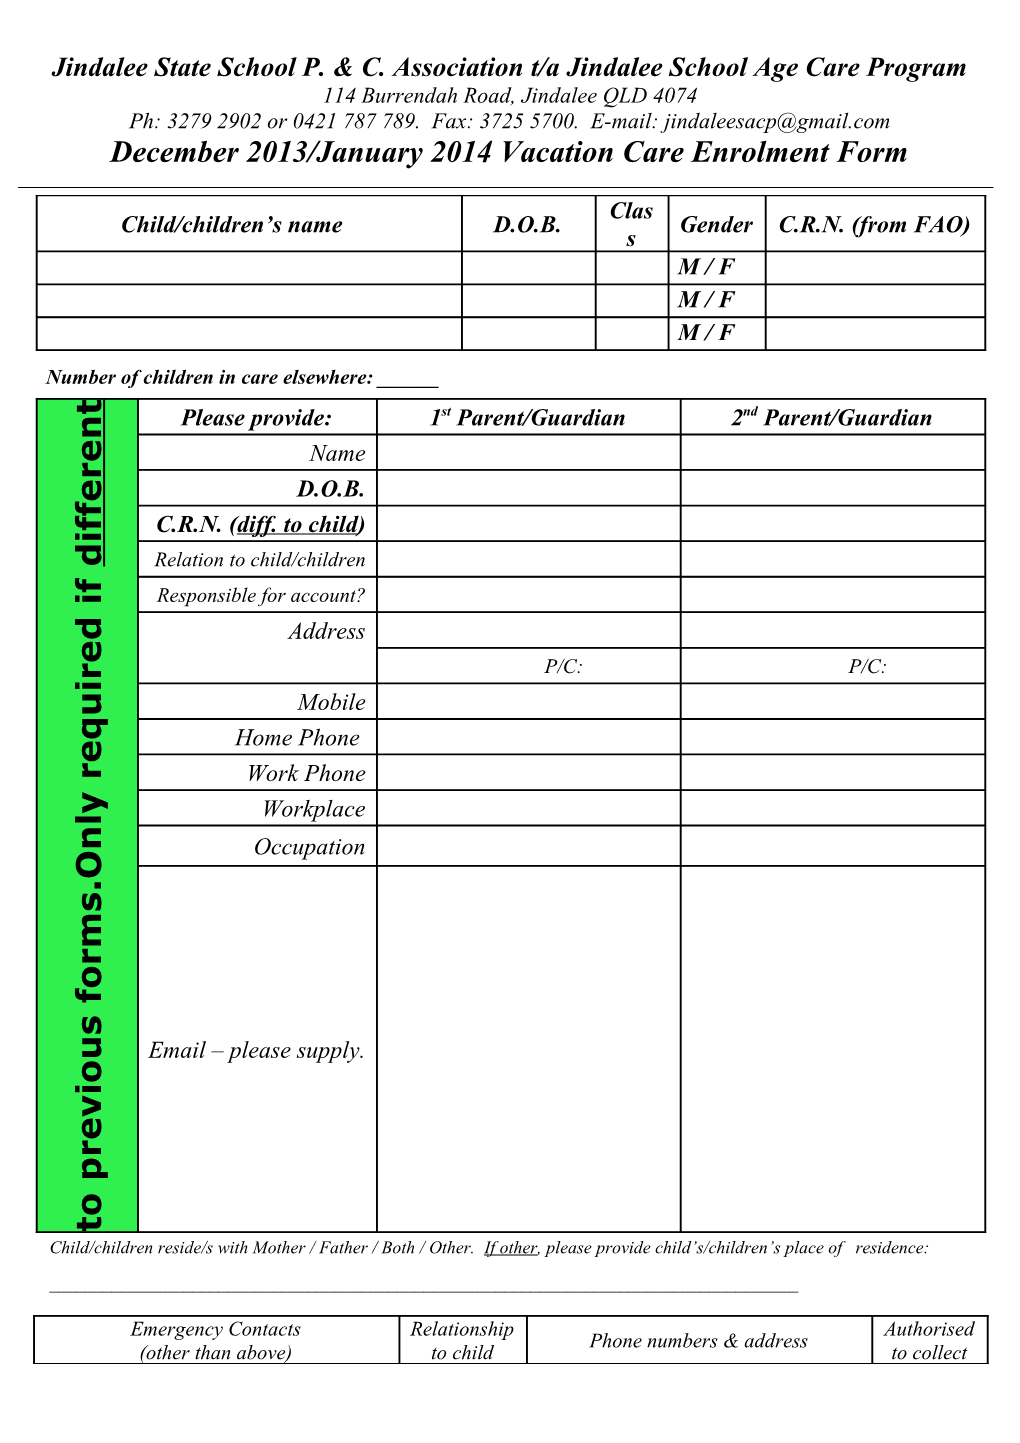 Dec 2013 VC Enrolment Form